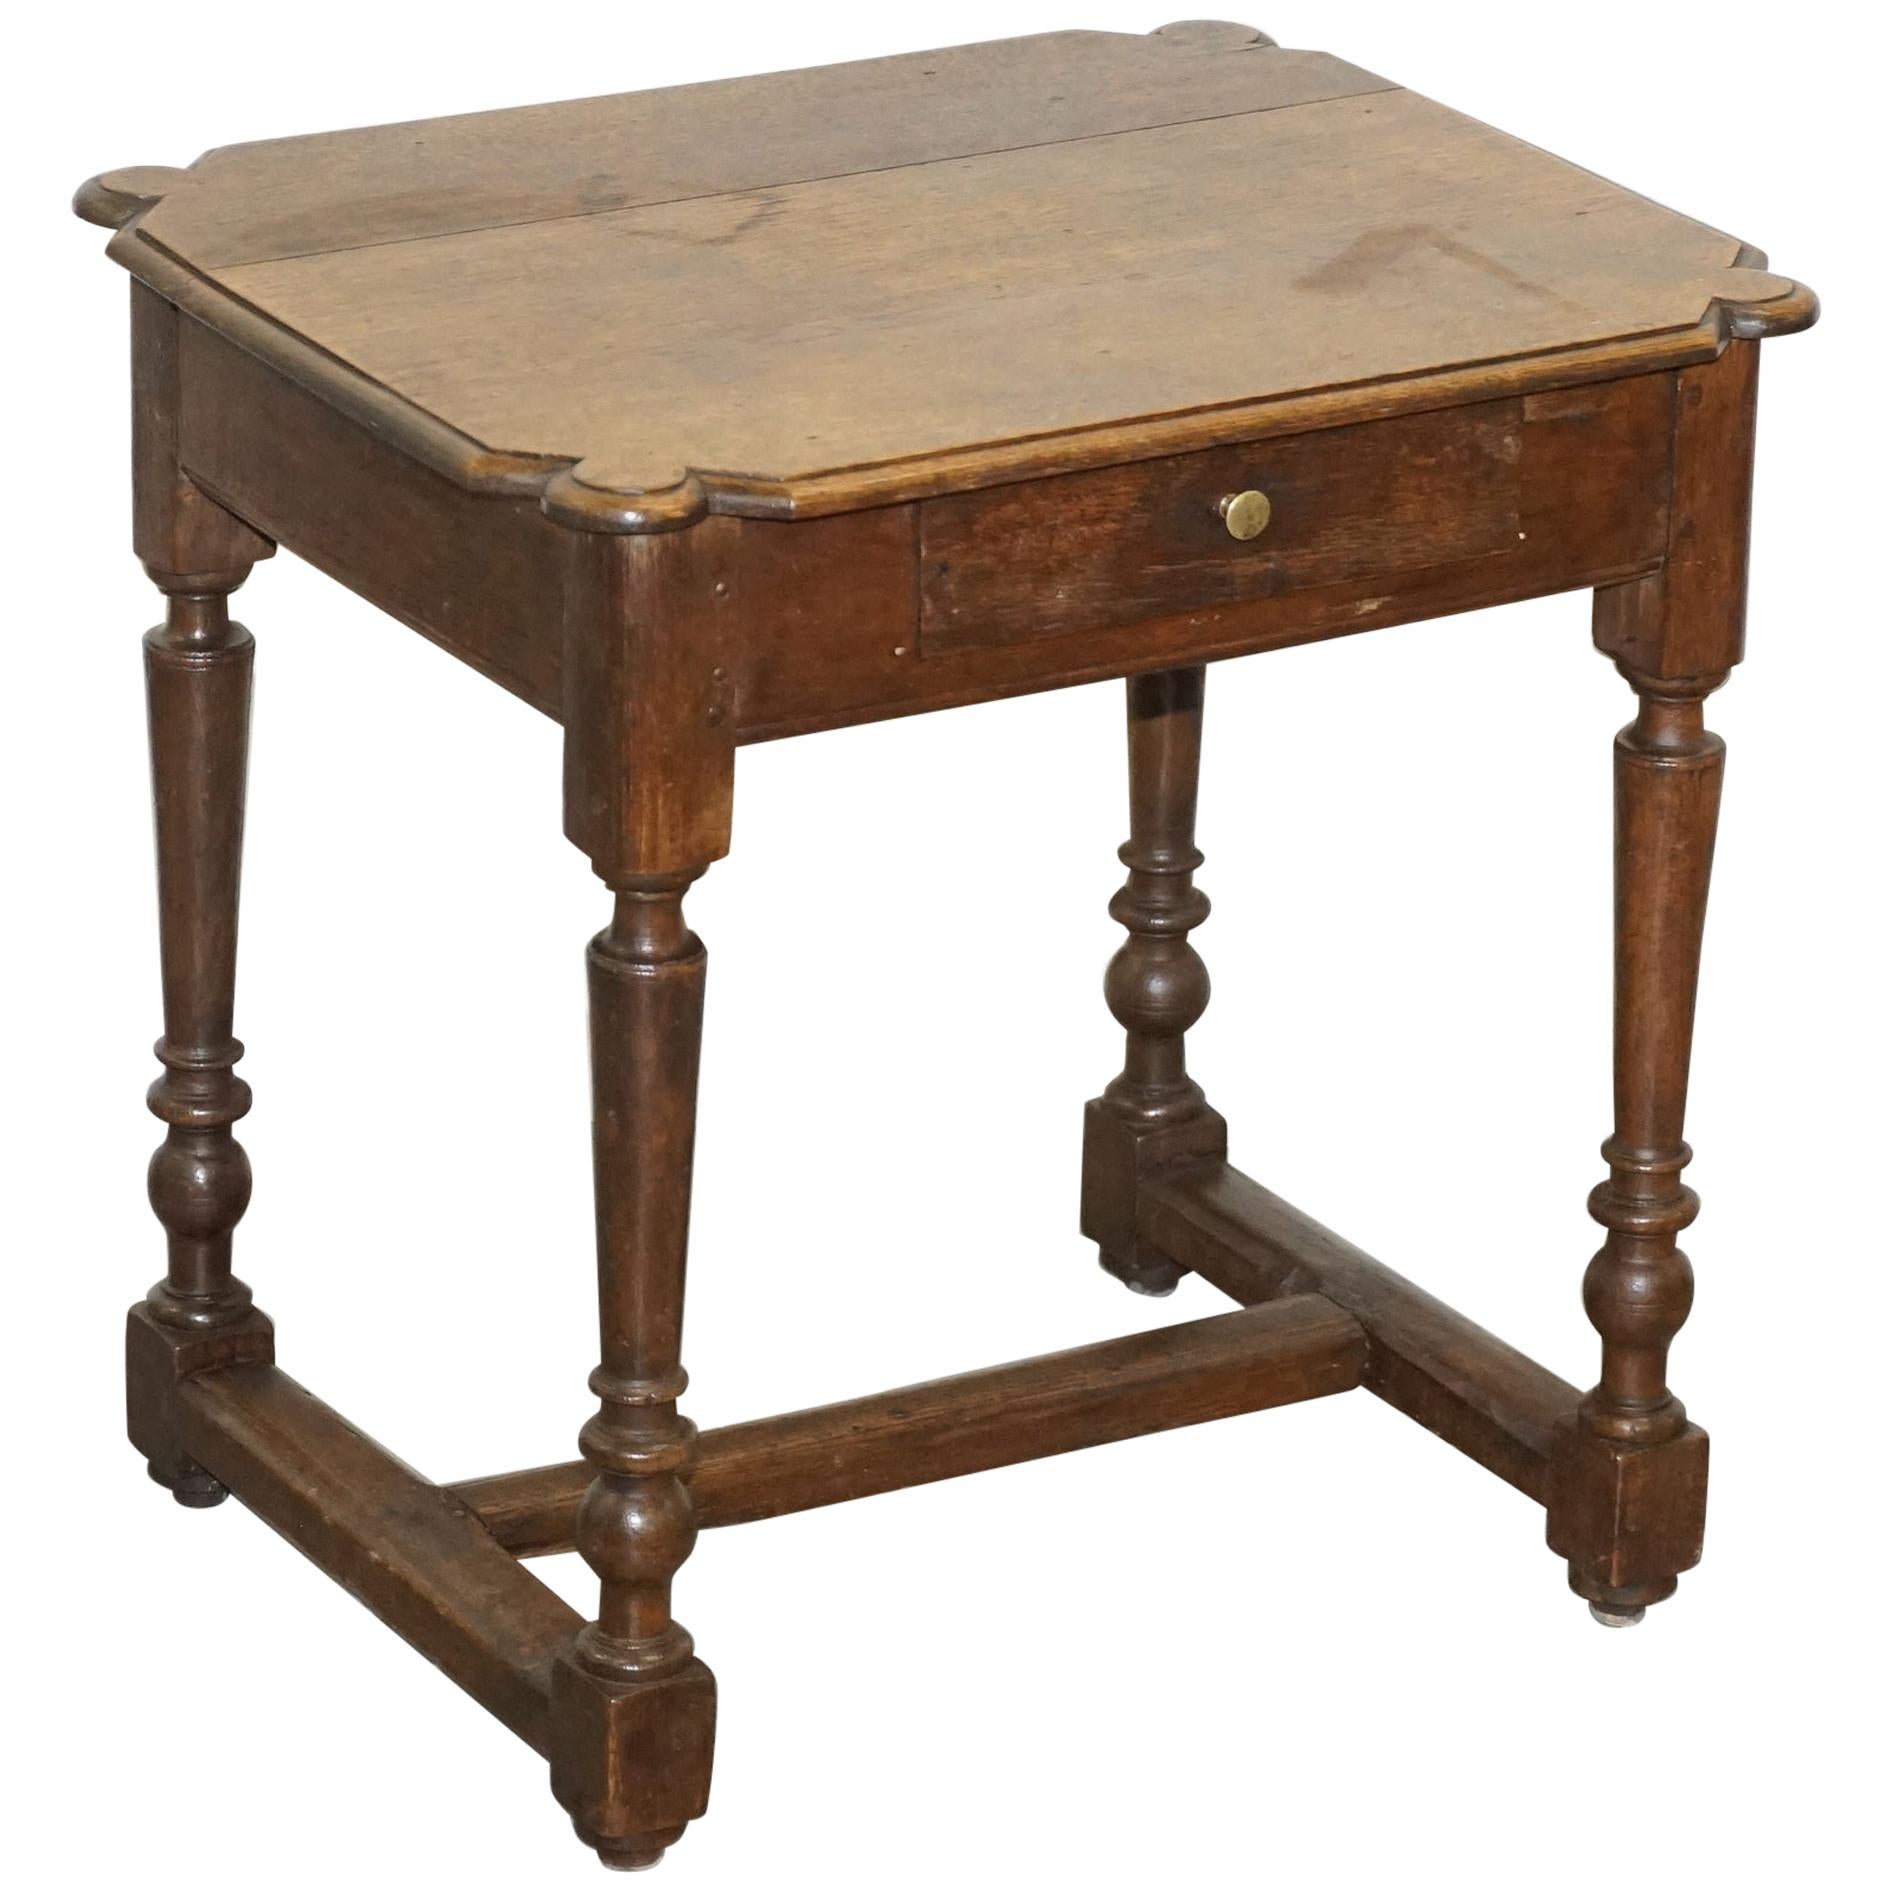 Table d'appoint en chêne hollandais du 18ème siècle avec un seul tiroir et un joli bois